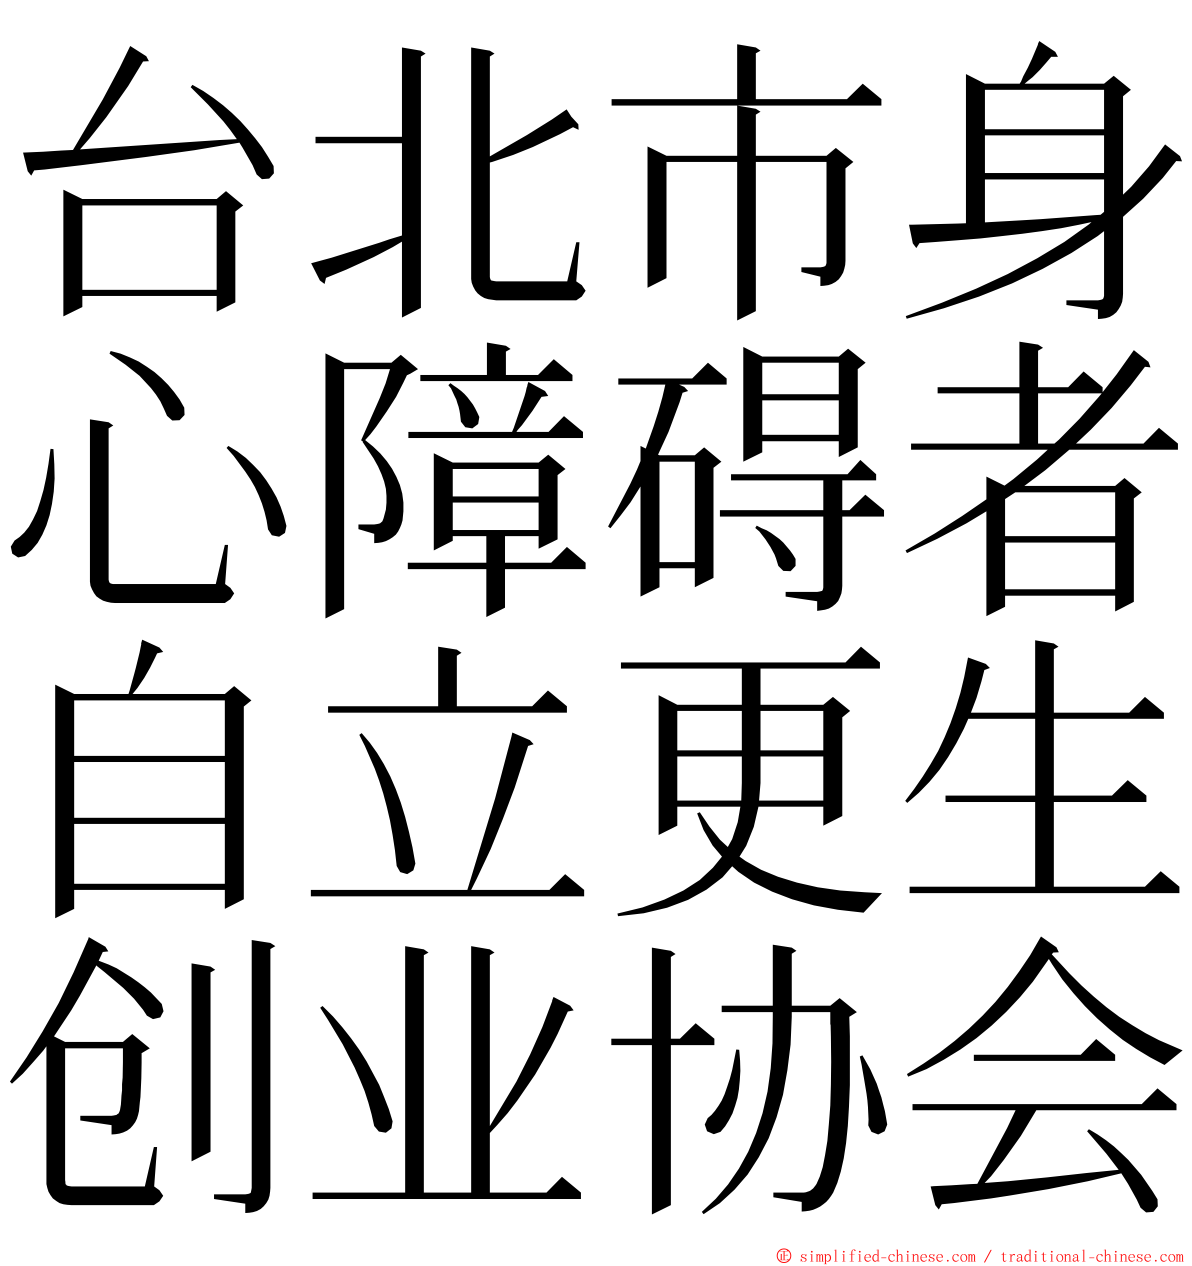 台北市身心障碍者自立更生创业协会 ming font